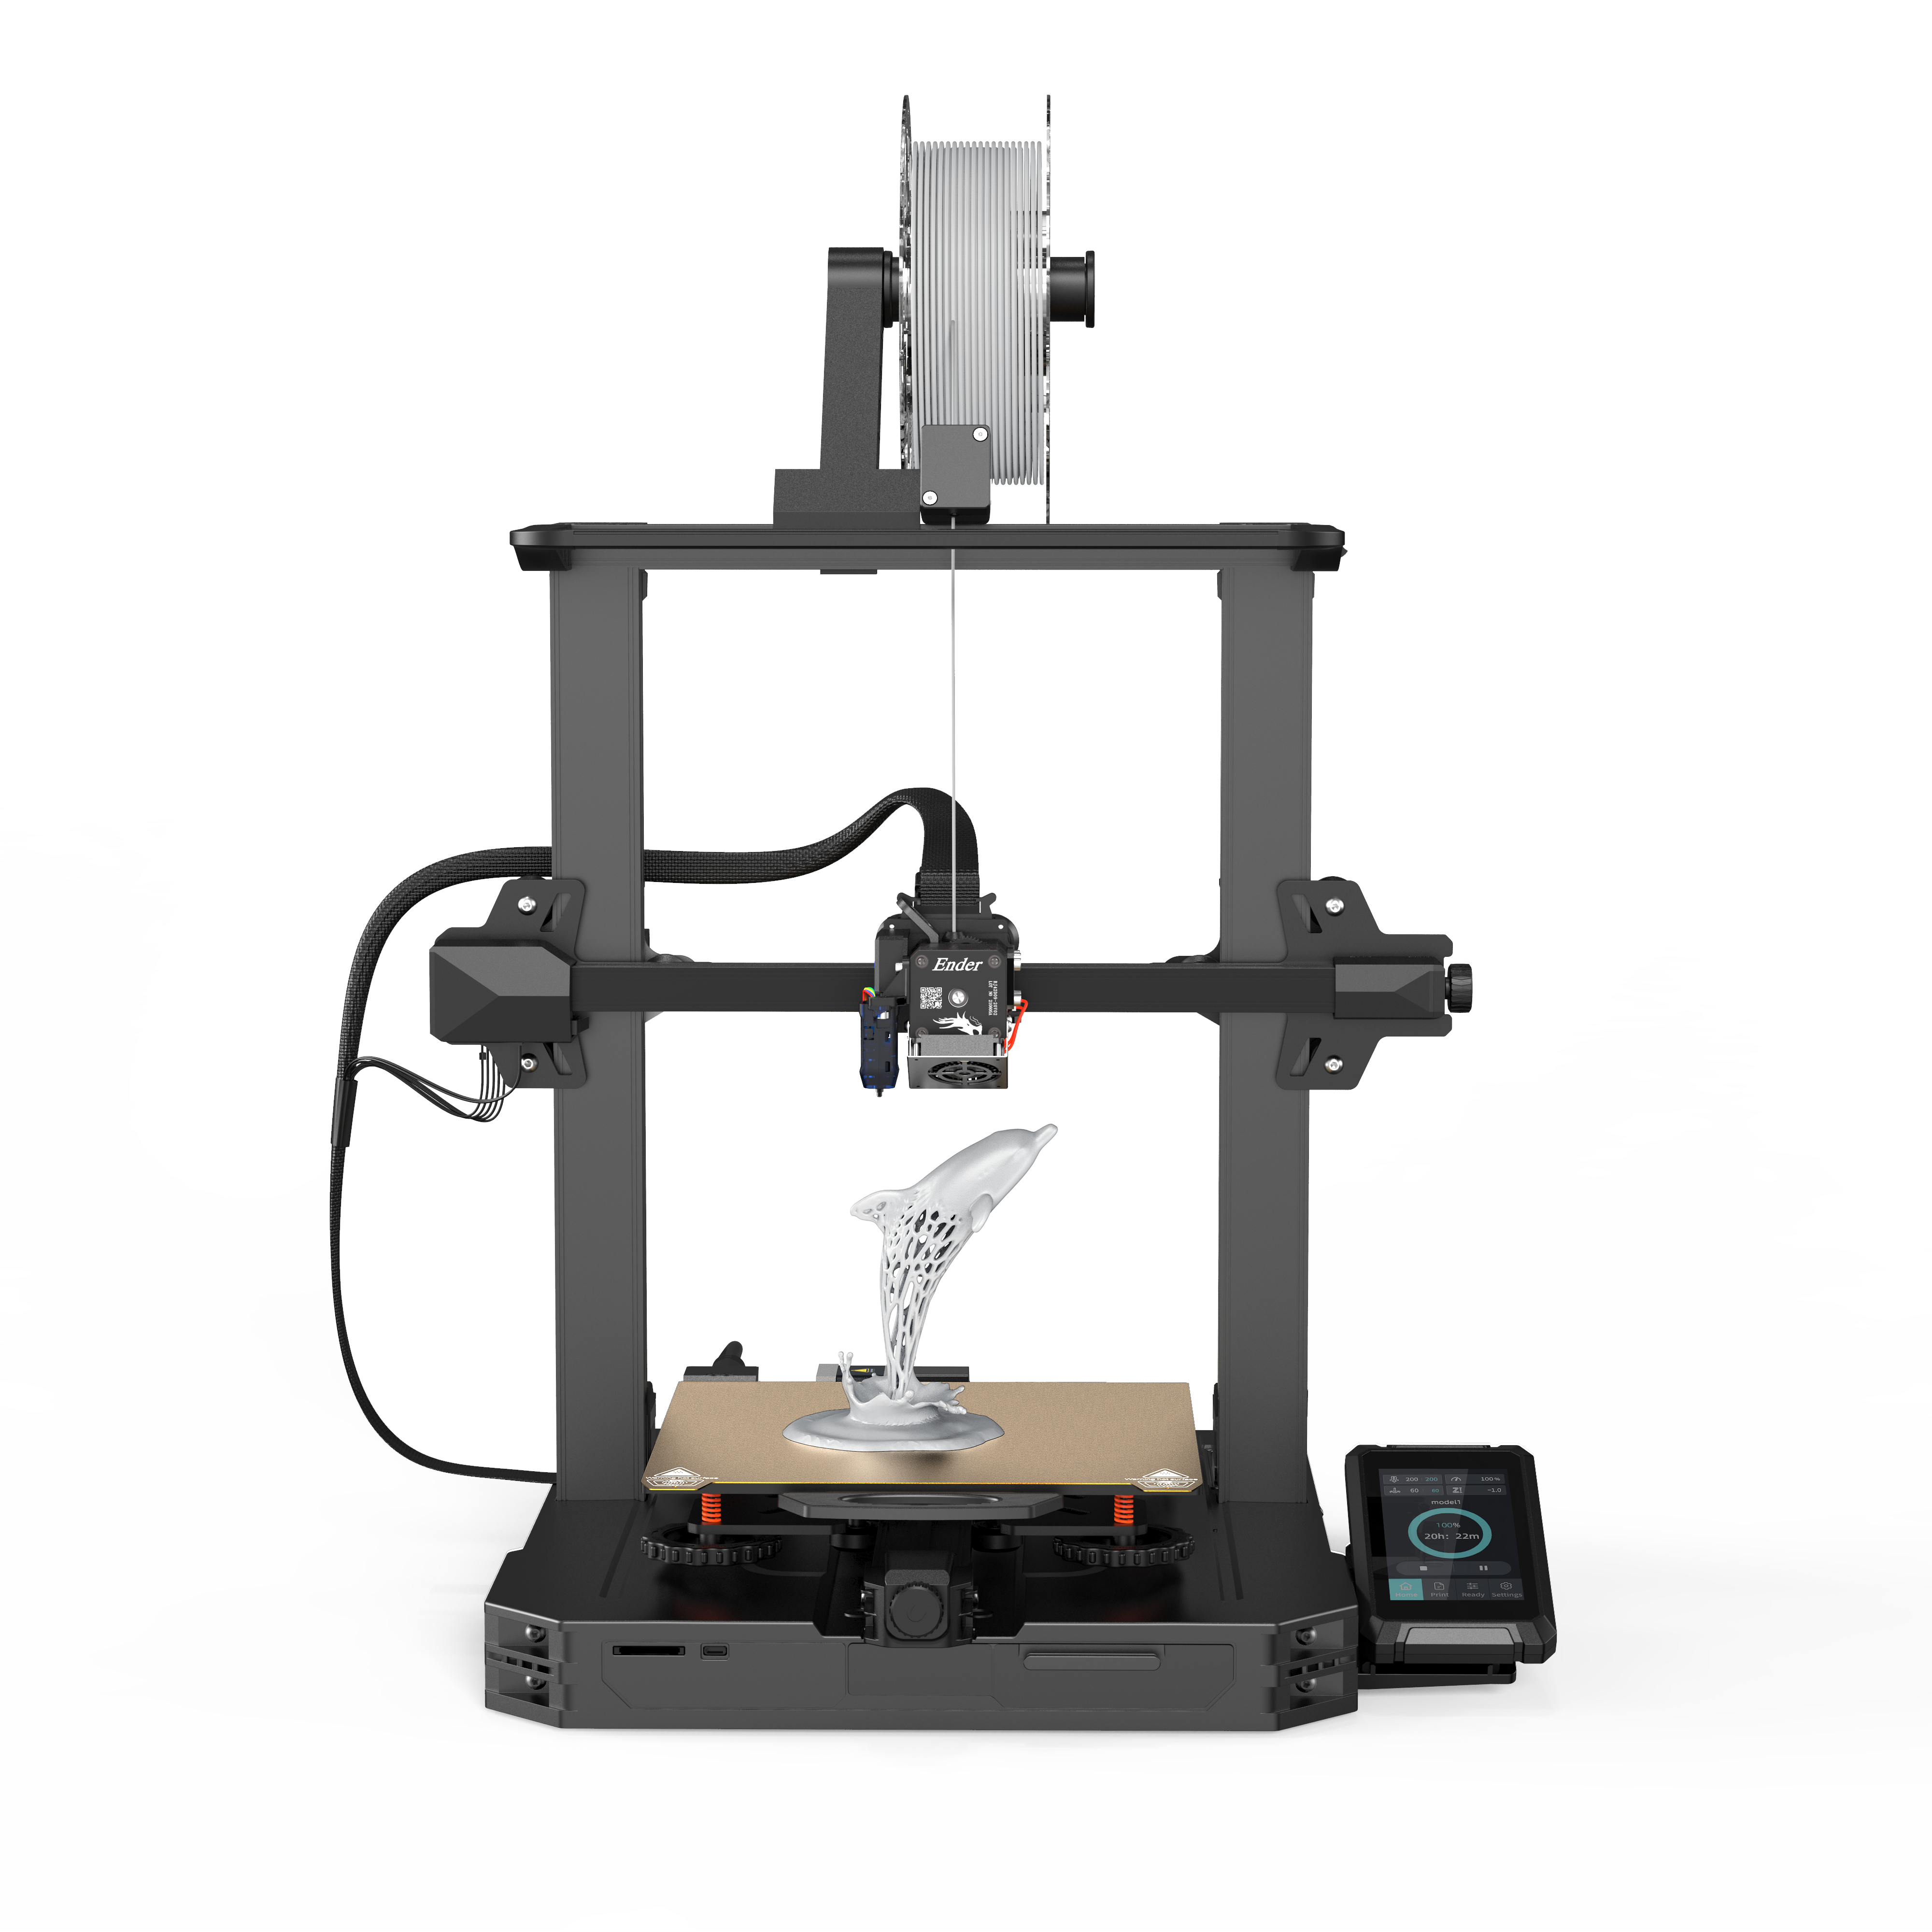 Impressora 3D Ender 3 S1 Pro